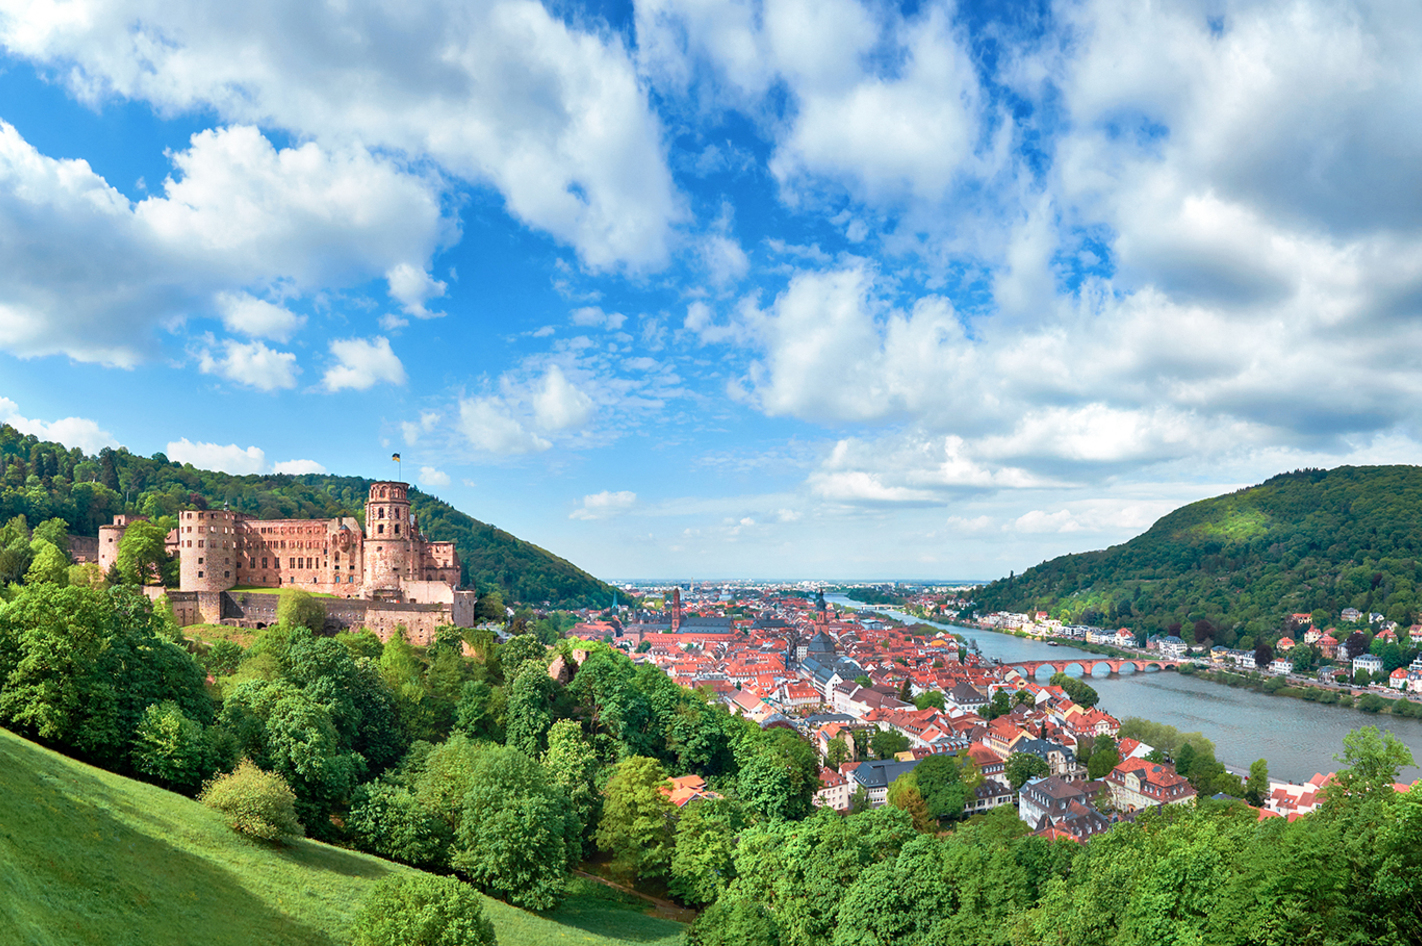 Kulinarische Stadtführung durch Heidelberg